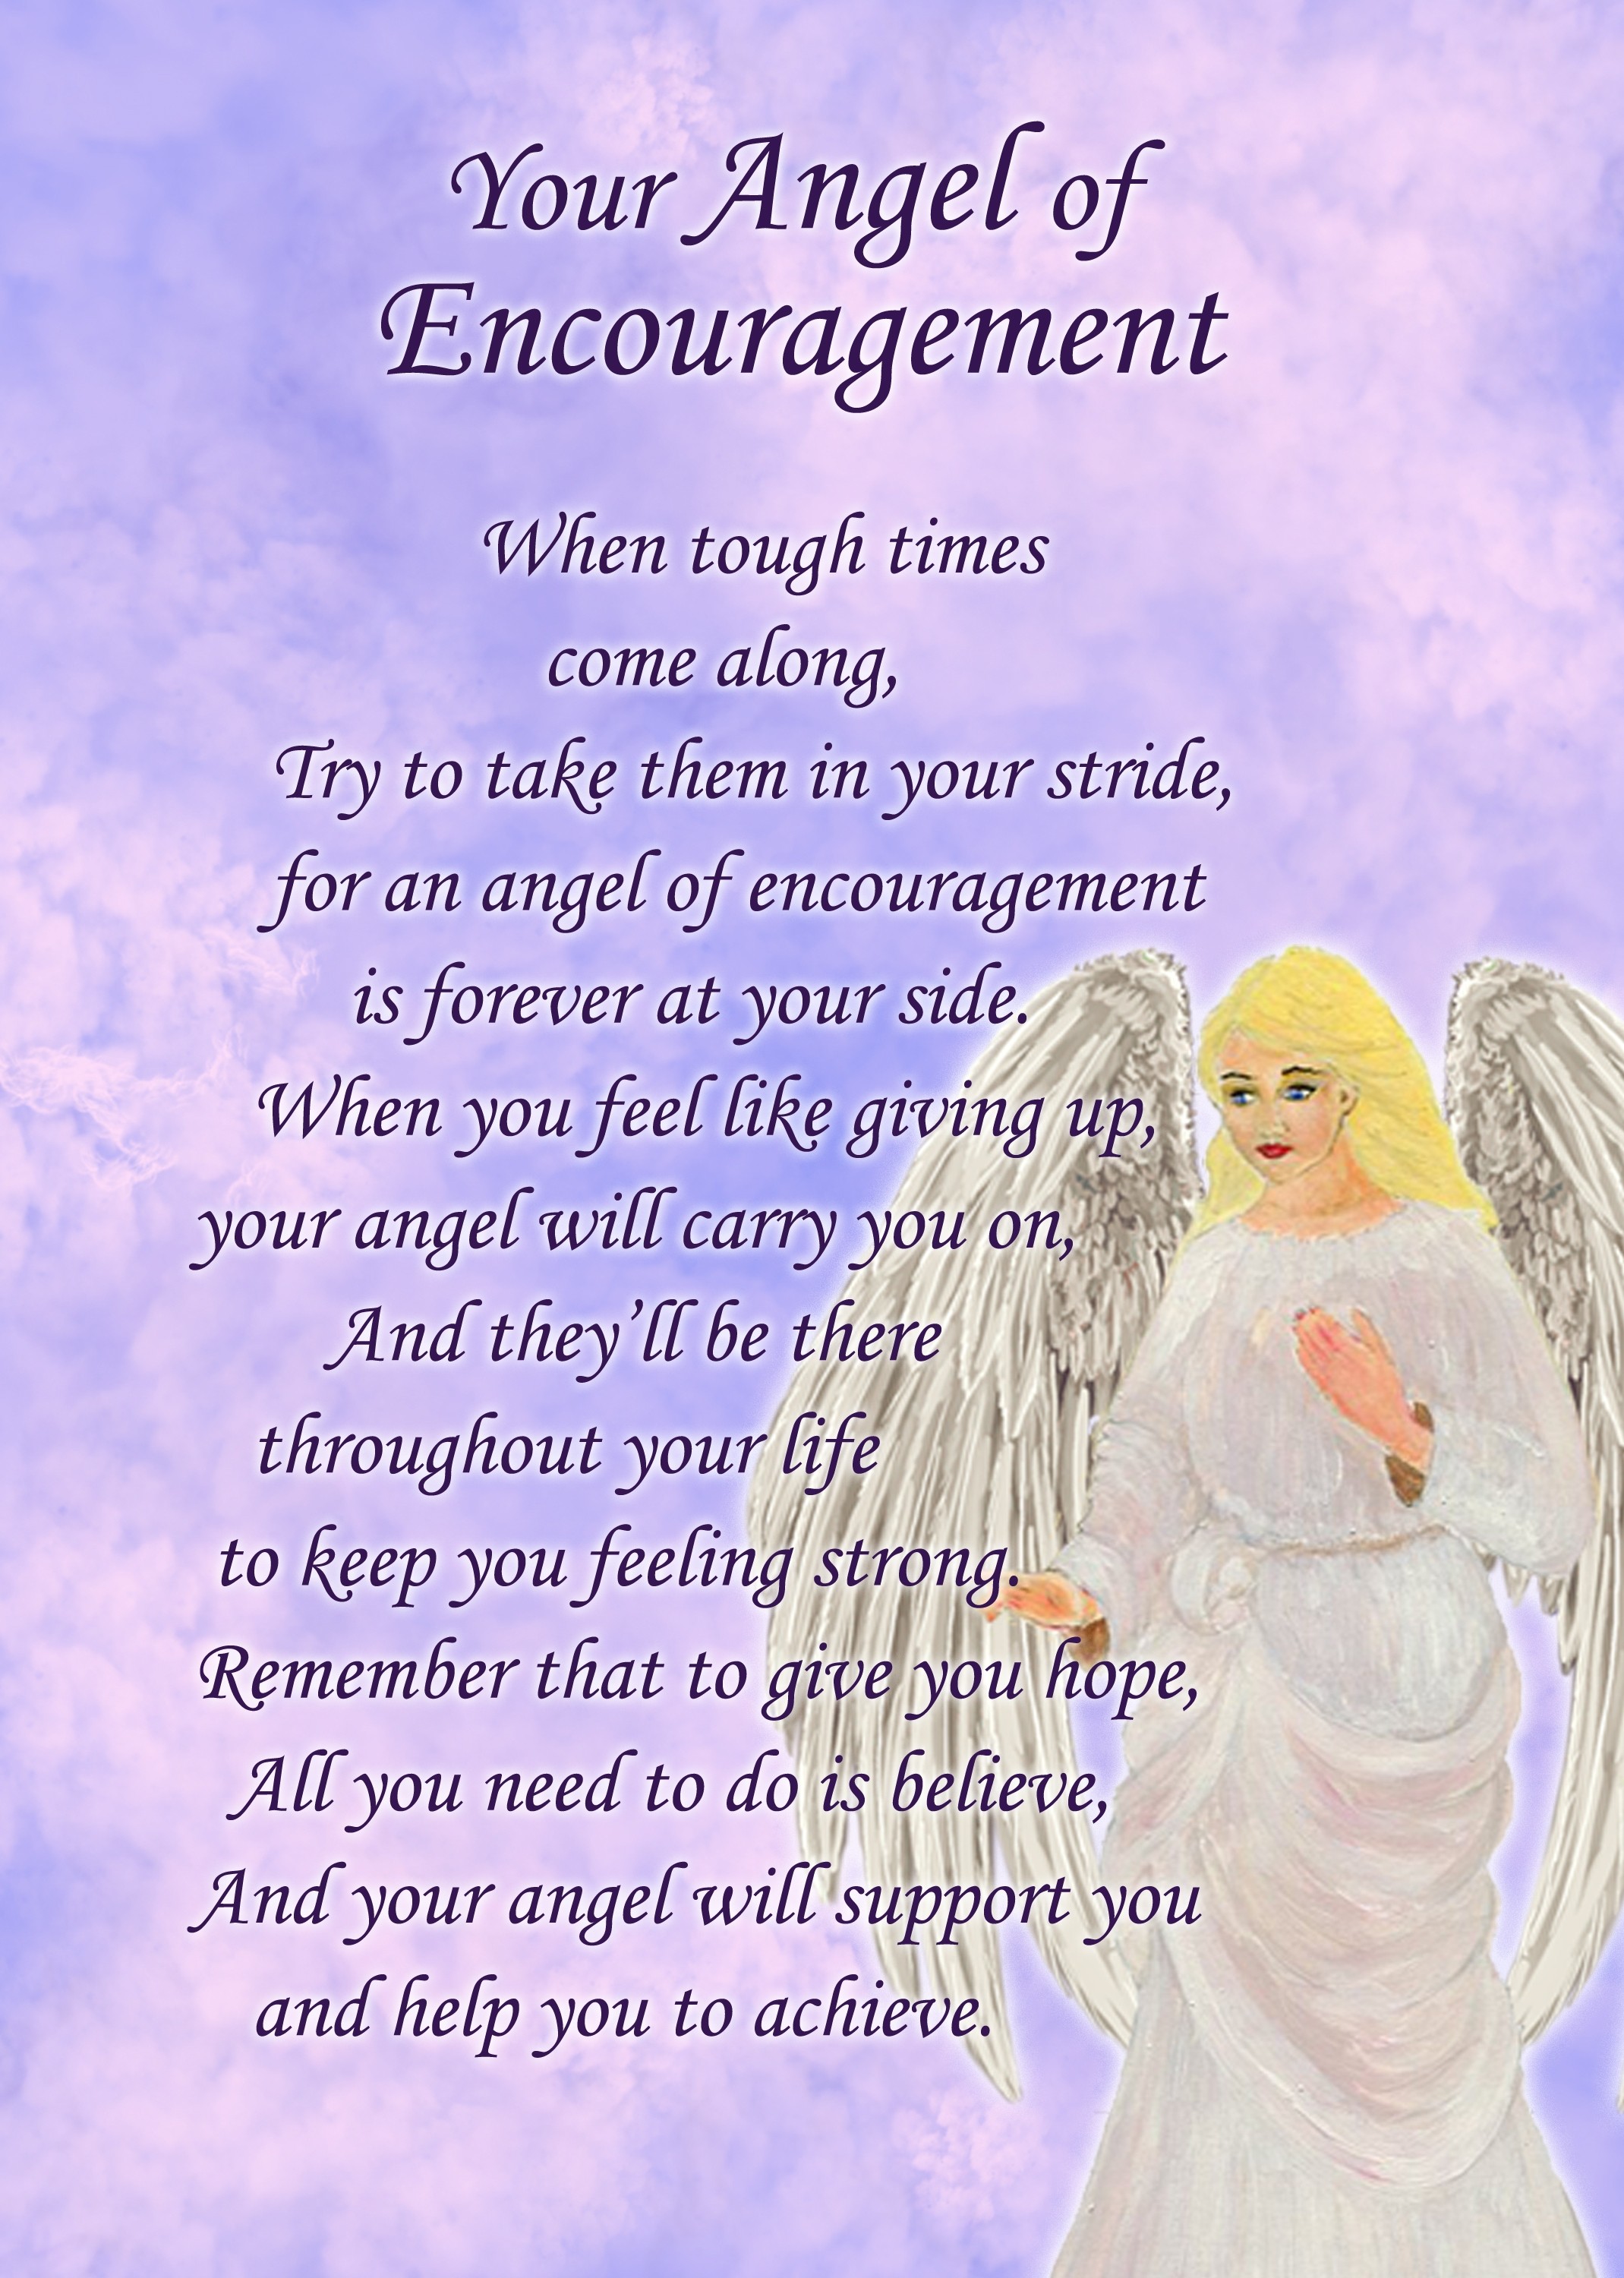 Angel of Encouragement Poem Verse Greeting Card